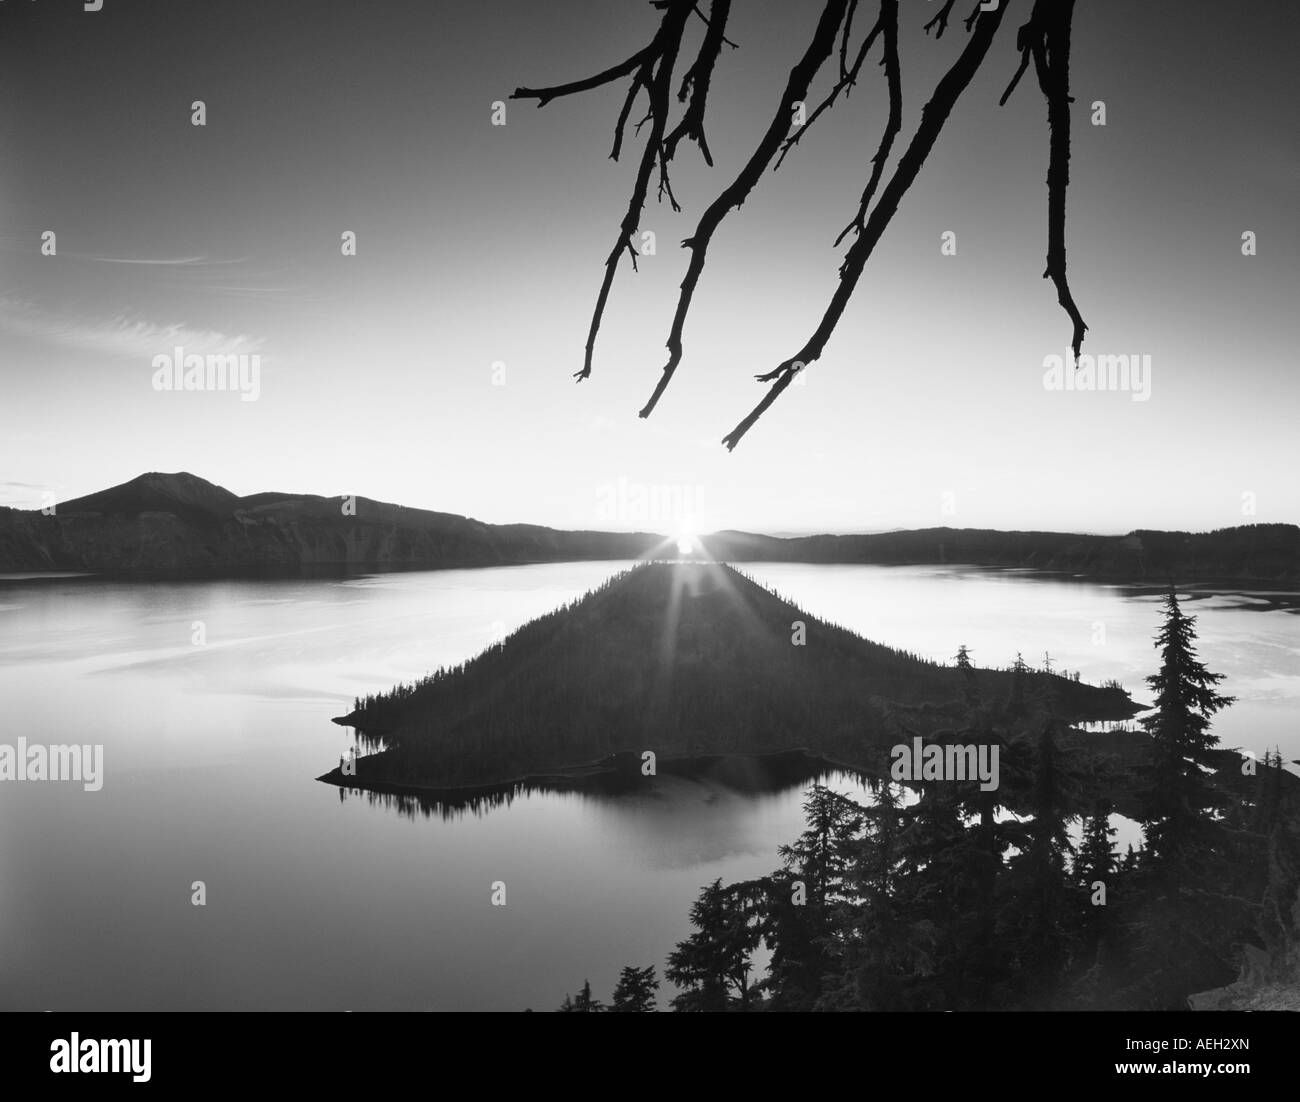 Impresionantes amaneceres Imágenes de stock en blanco y negro - Alamy